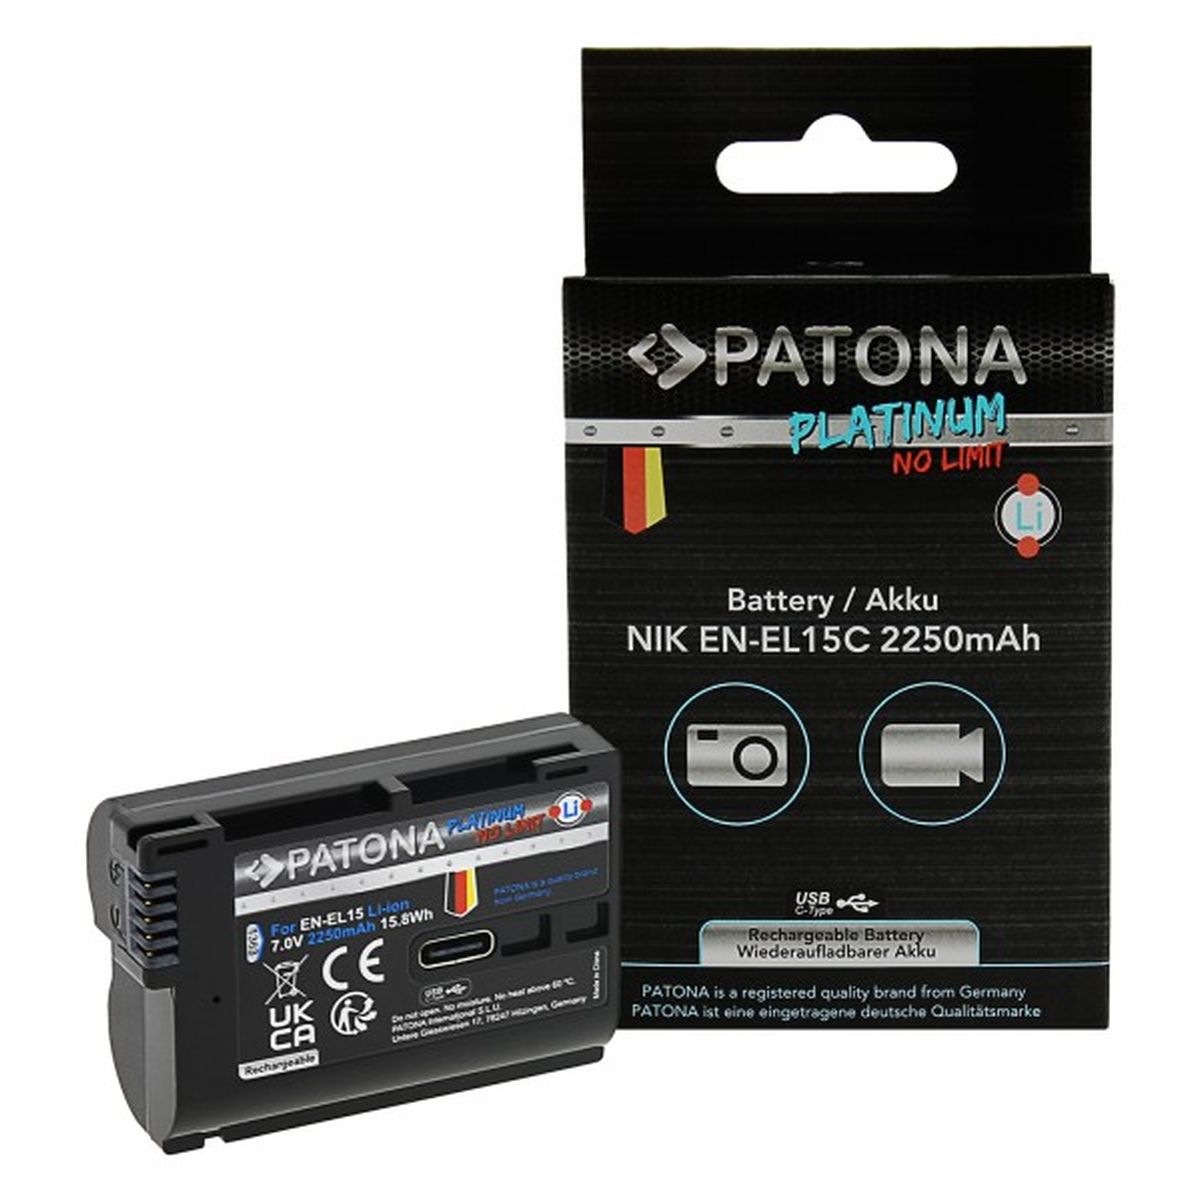 Patona Platinum Akku EN-EL15 mit USB-C Input für Nikon-Kameras